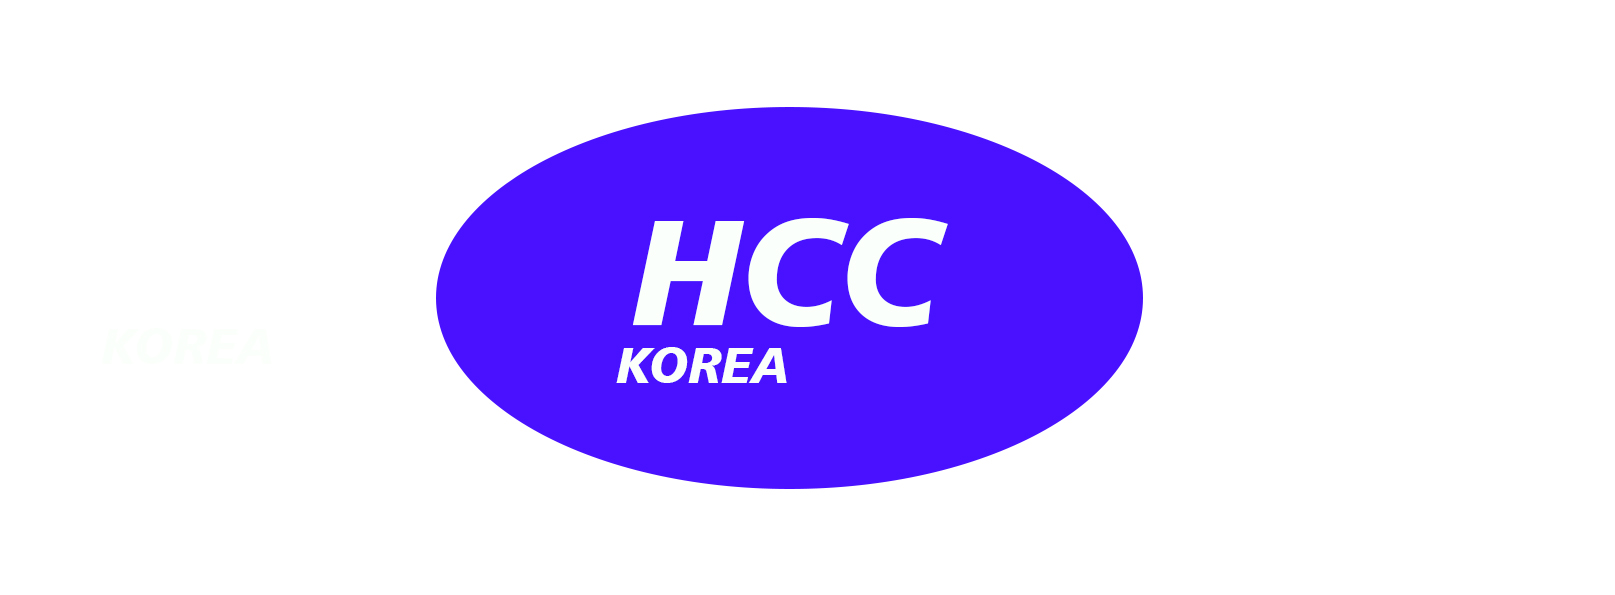 HCC KOREA